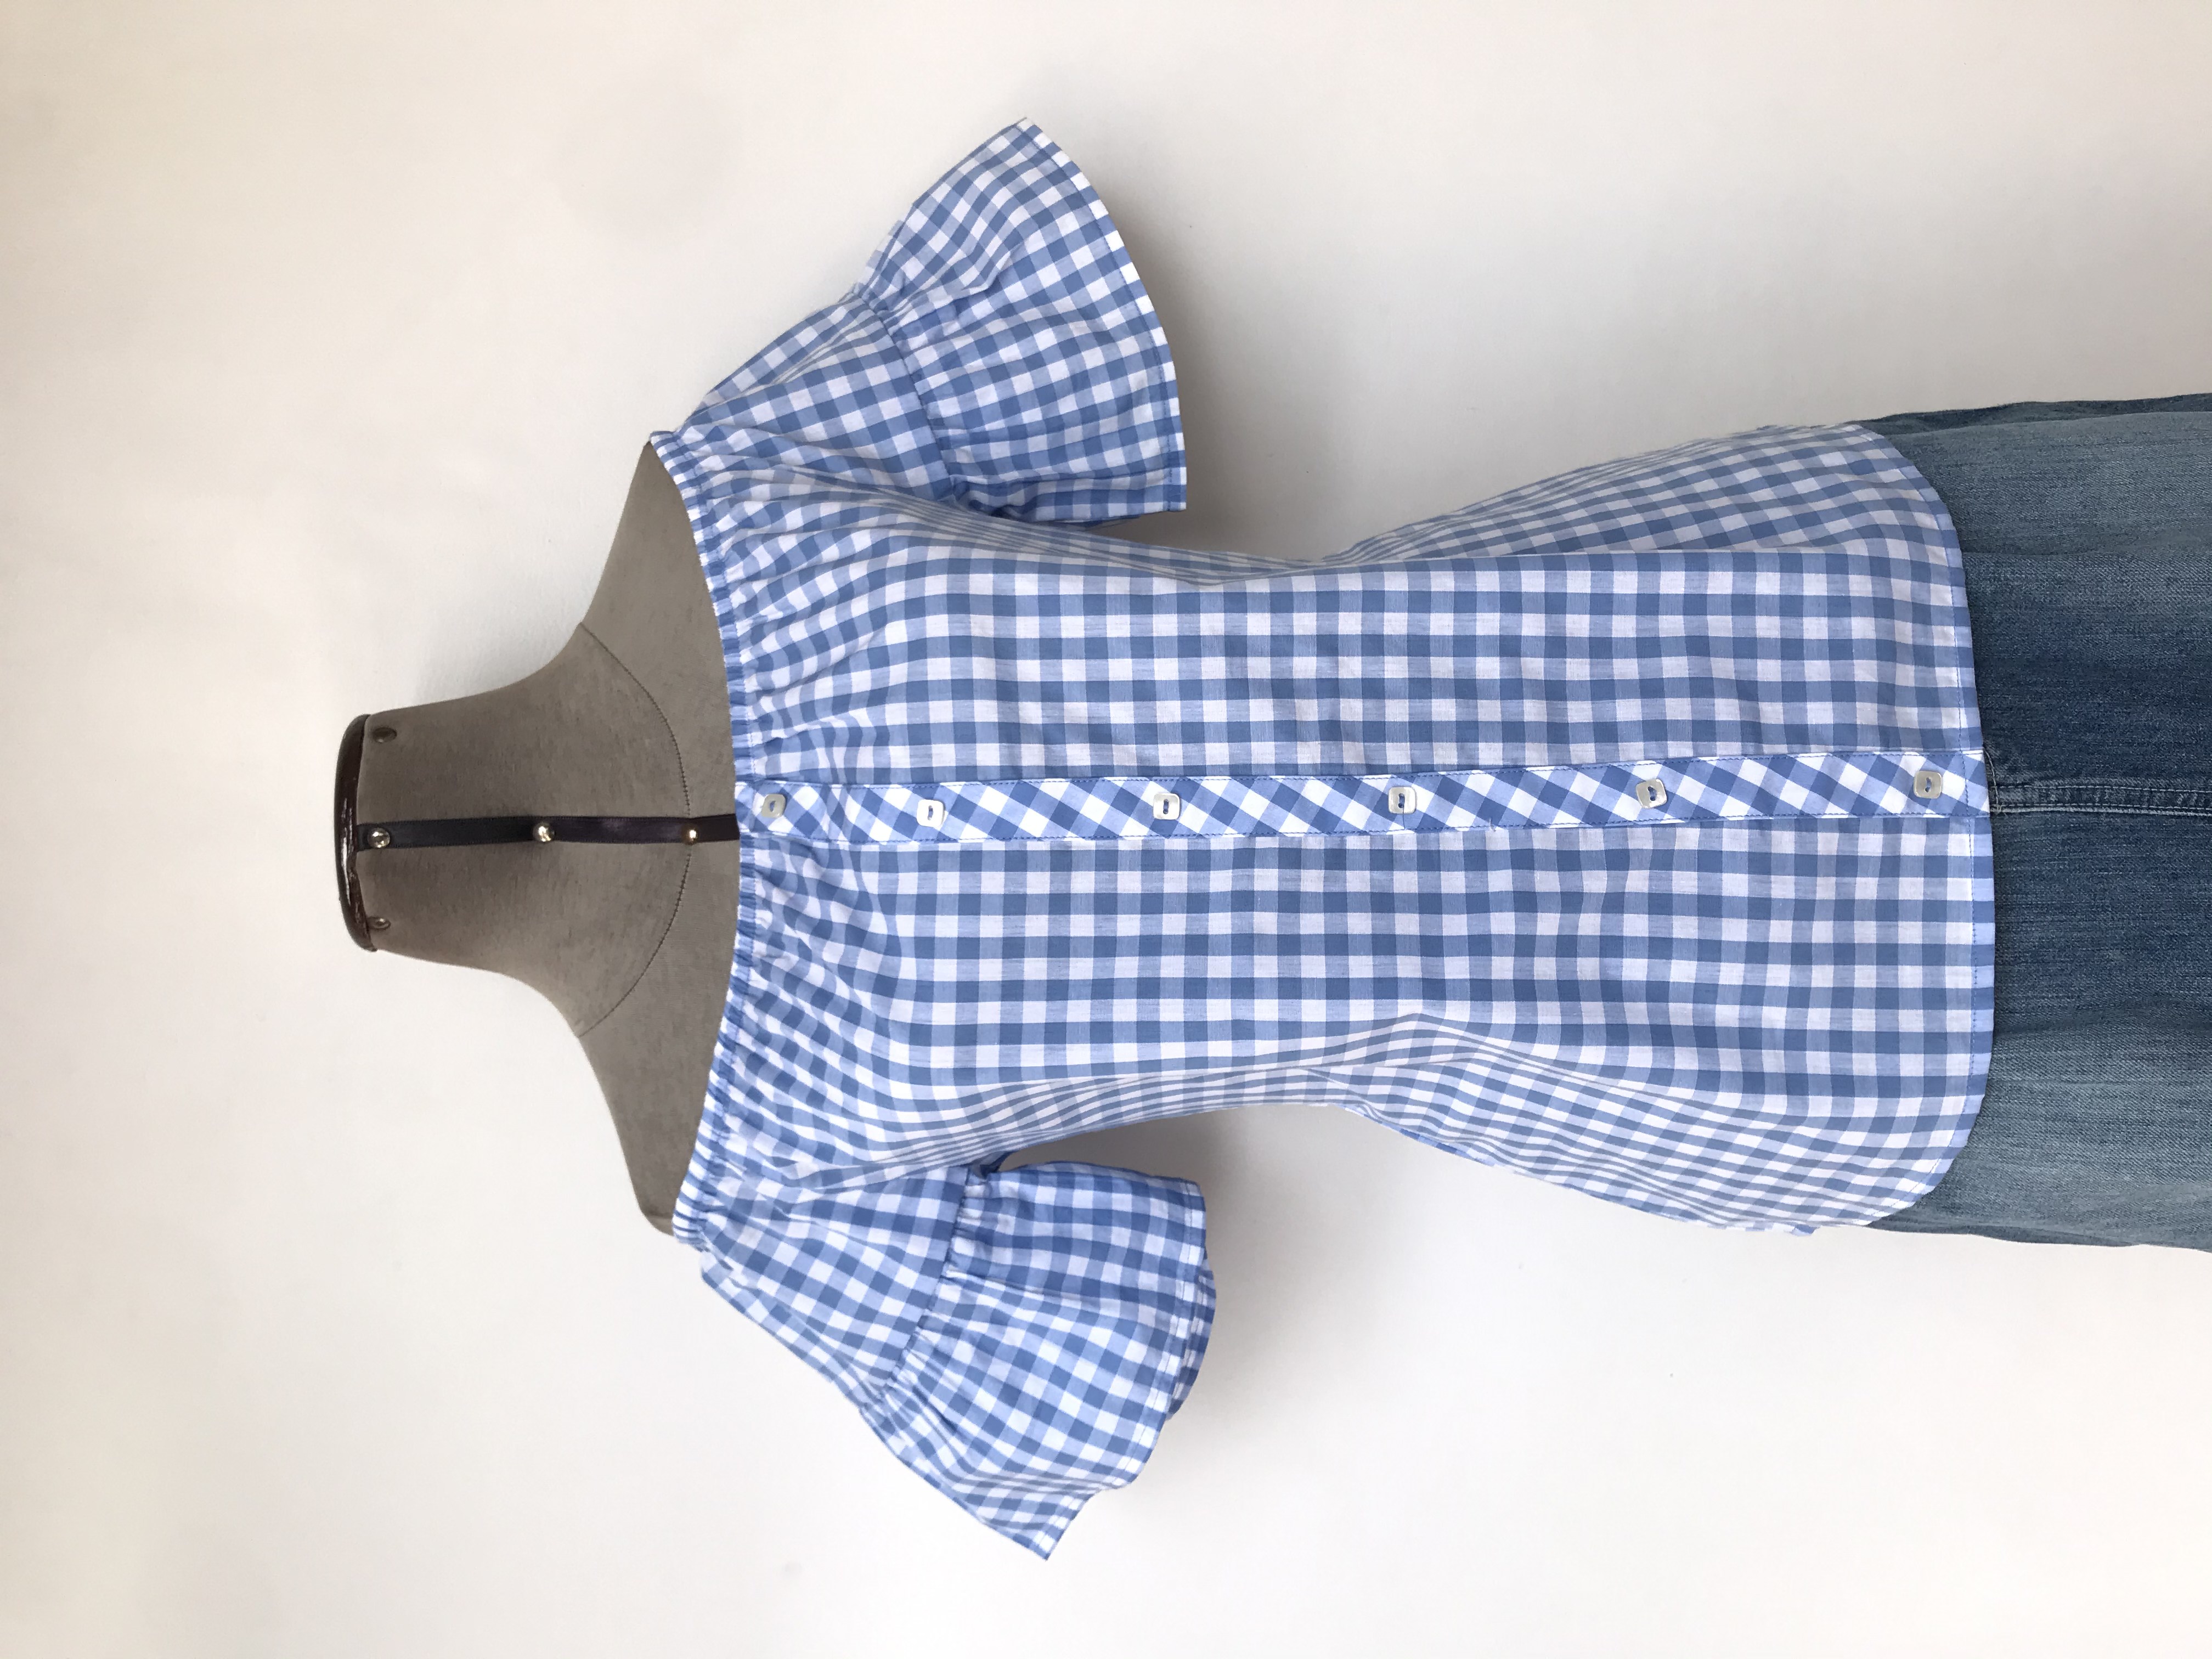 Blusa Pionier 100% algodón a cuadros celestes y blancos, off shoulder con elástico, fila de botones centrales y mangas con volante
Talla S